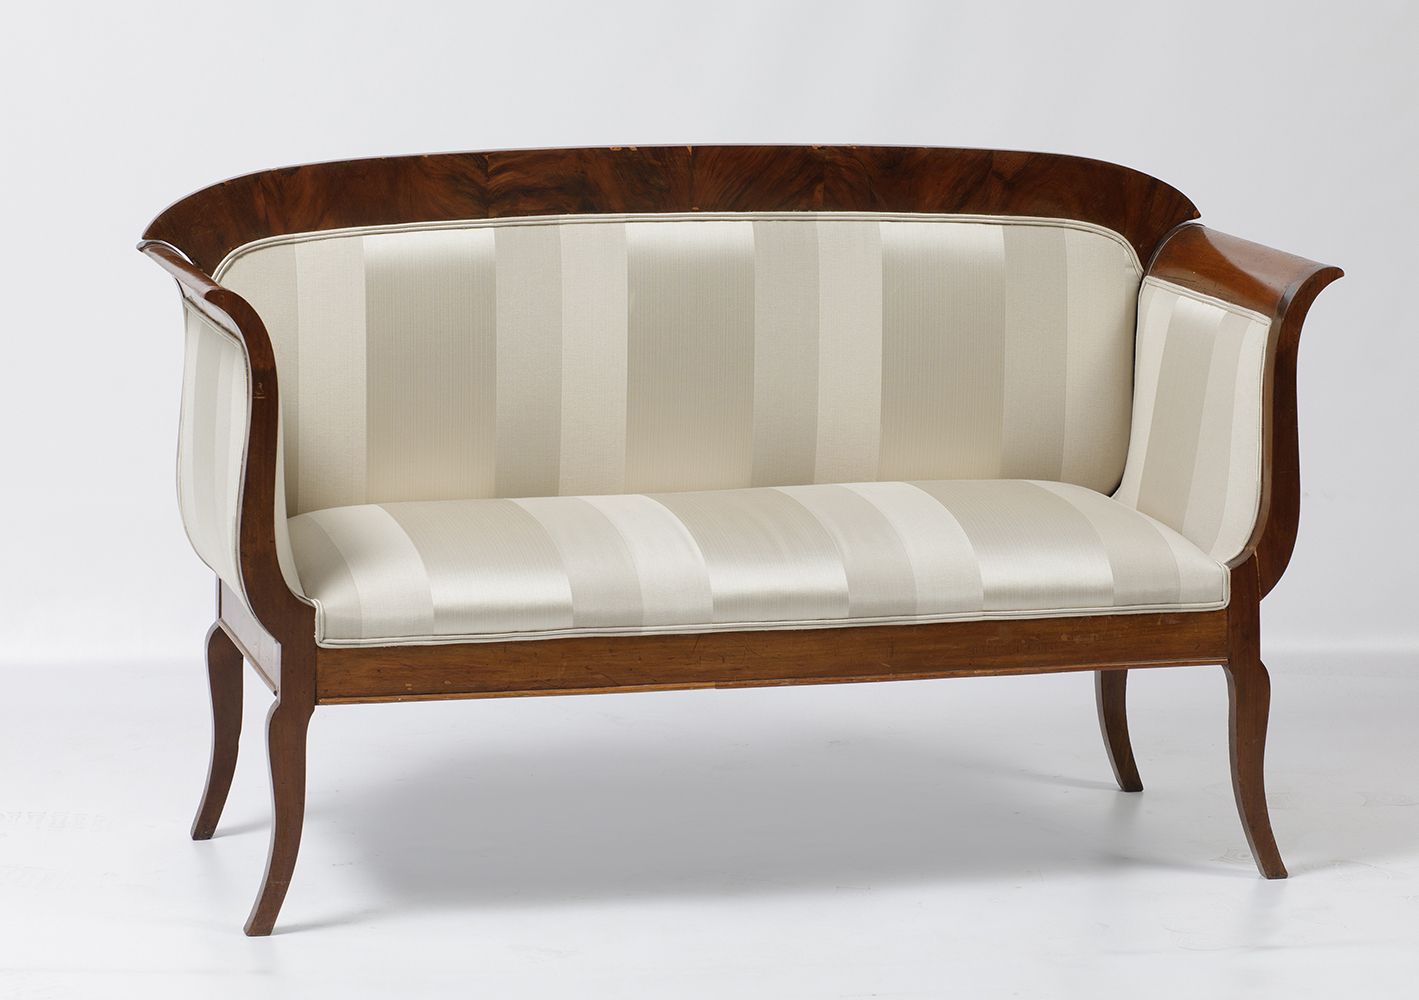 Sofa in mahogany palm Canapé anglais S.XIX en bois d'acajou . 92 x 15 x 54 cm.